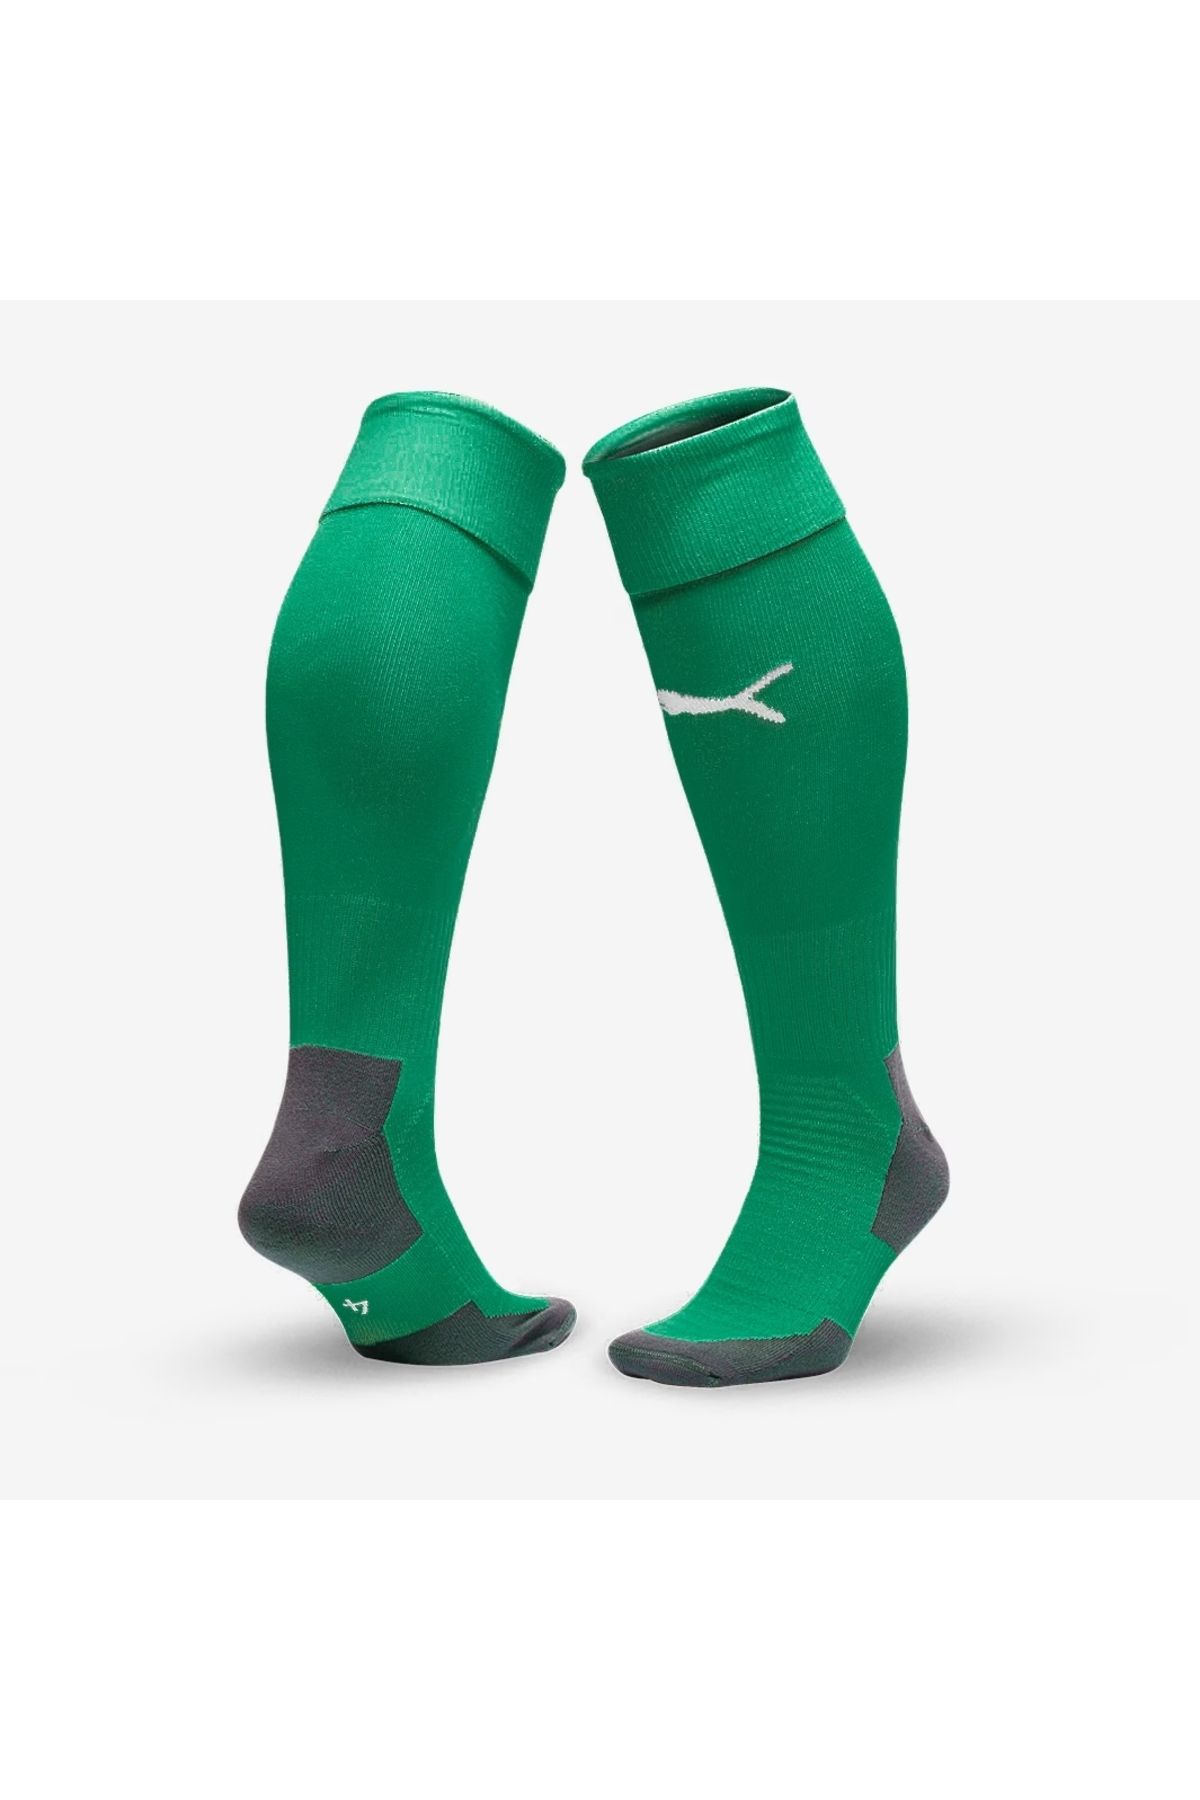 Puma Yetişkin Futbol Maç Çorabı Futbol Tozluk Futbol Halısaha Çorabı Konç Halı Saha Çorabı